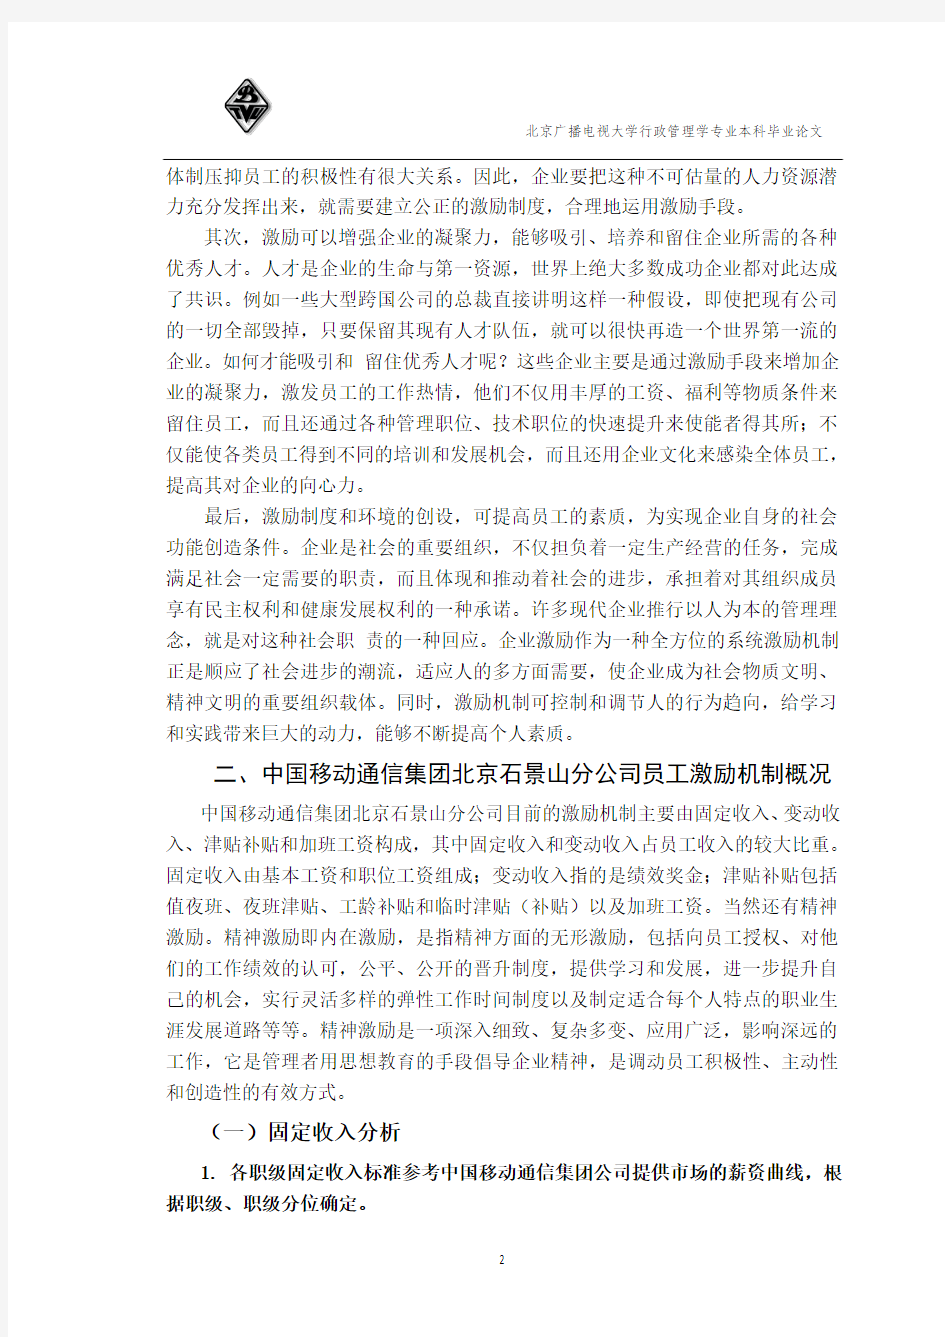 浅谈中国移动通信集团员工激励机制——以北京石景山分公司为例